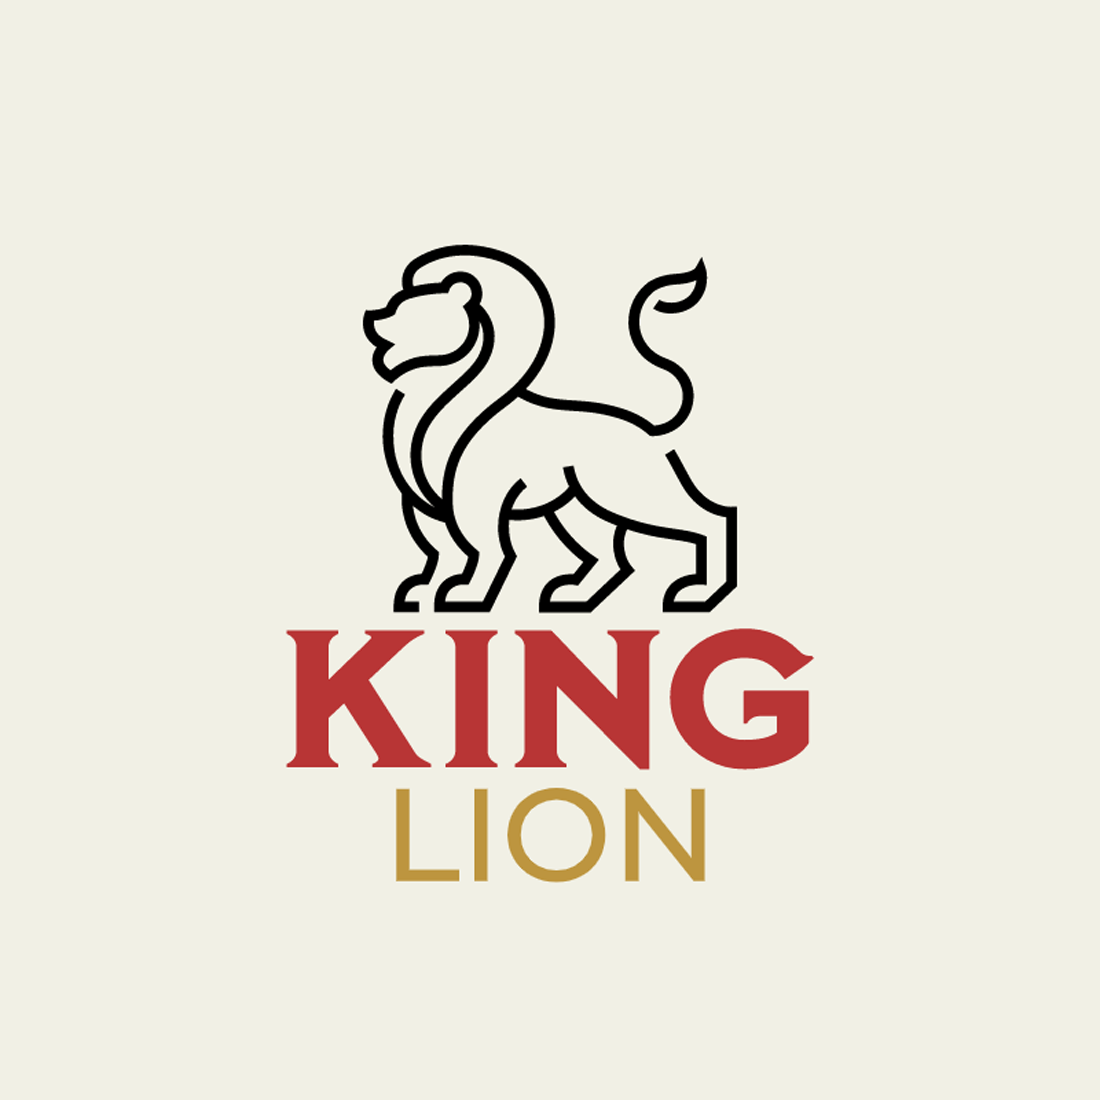 Vintage t-shirt design: King Lion & Bear cover image.